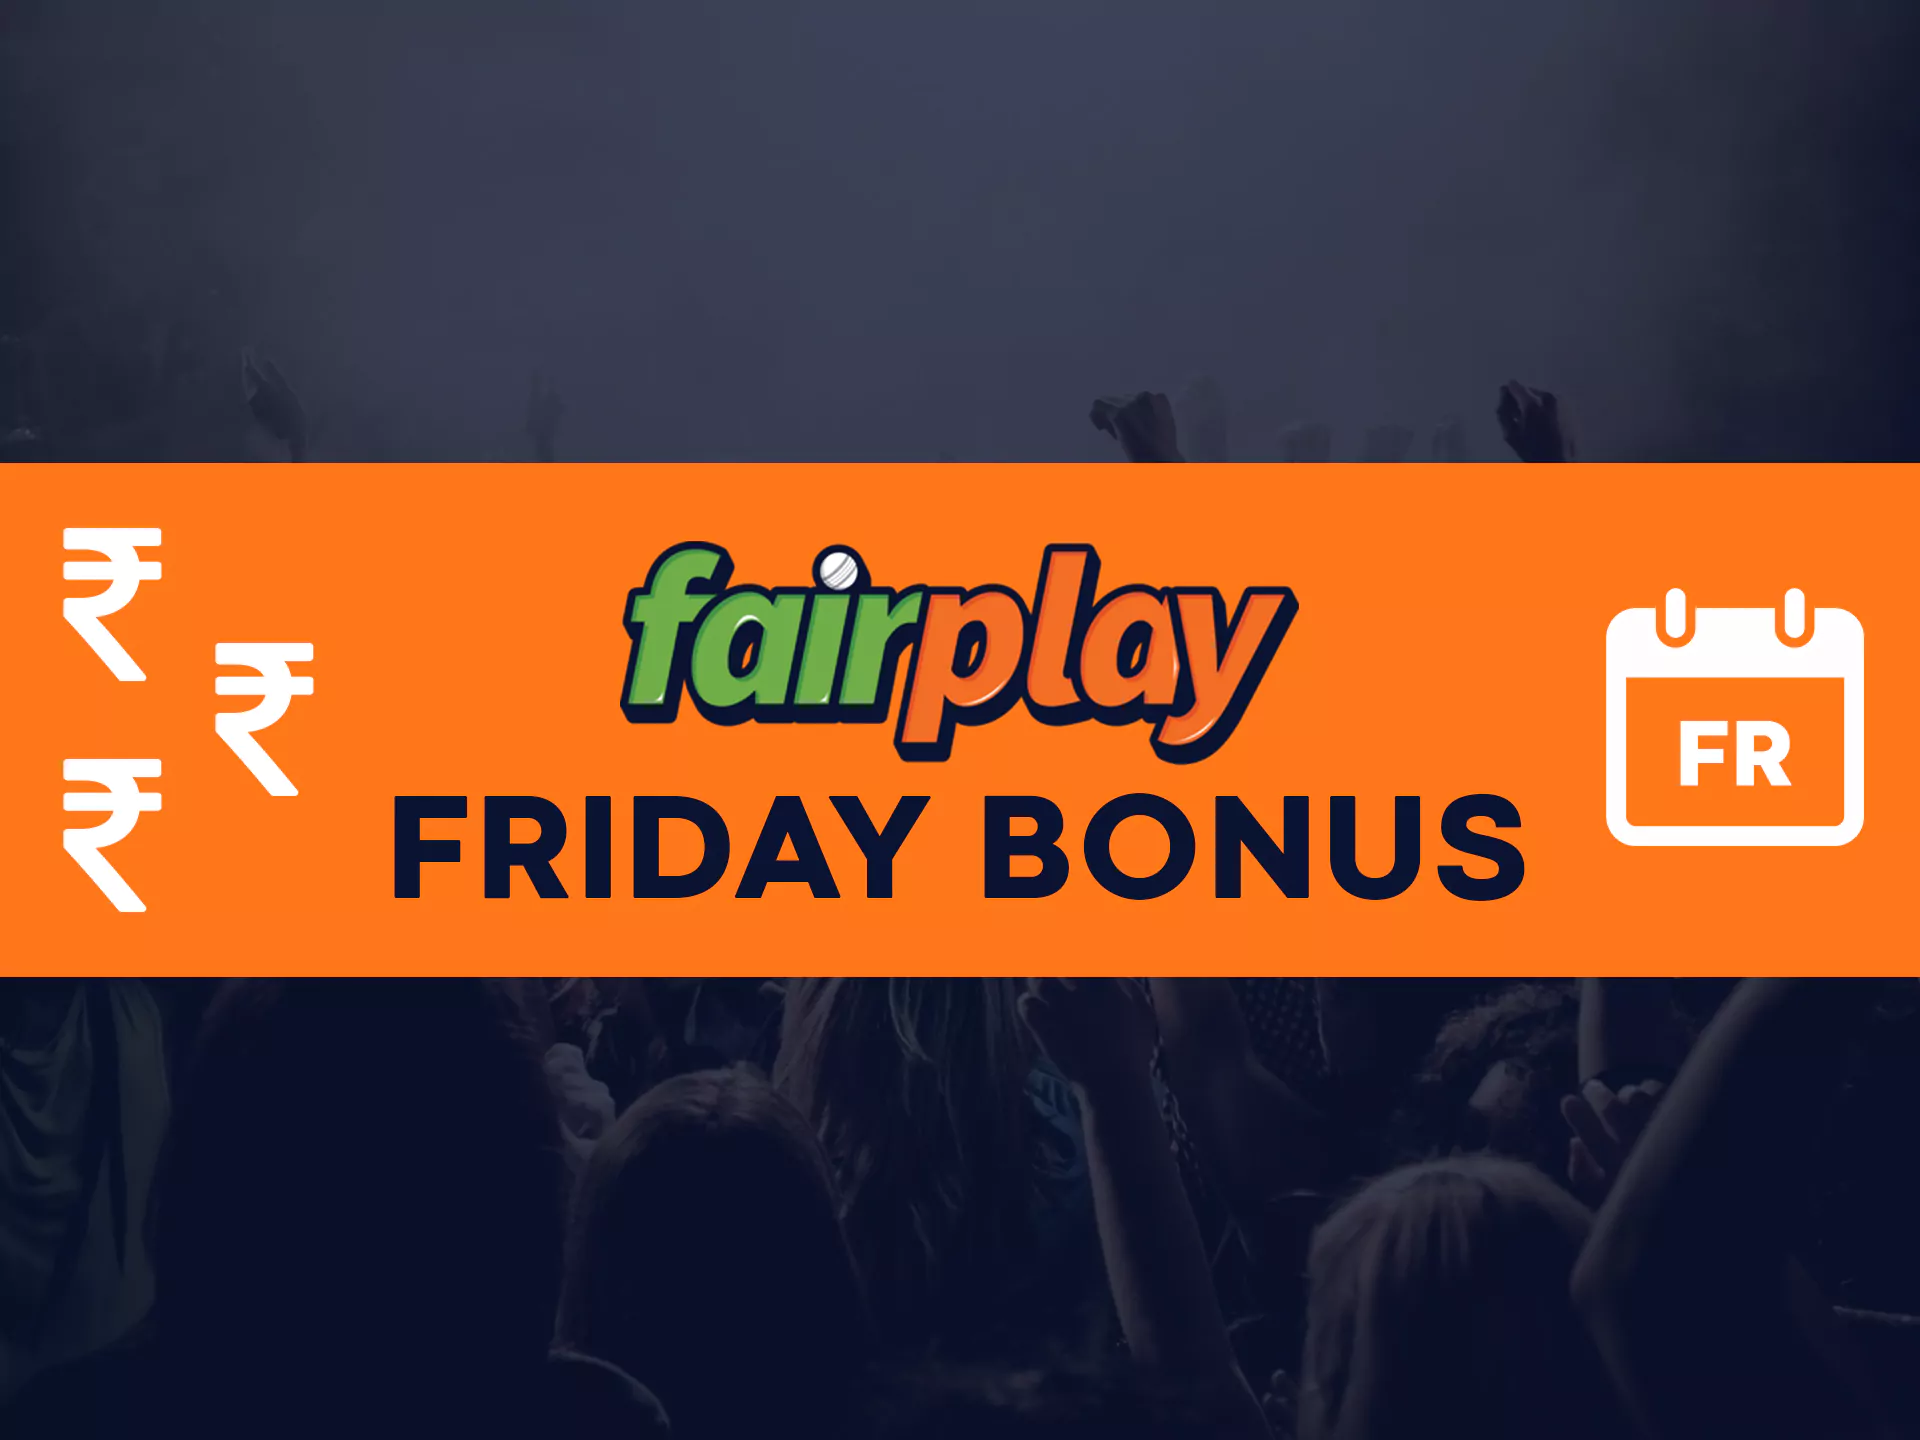 Get bonuses each friday at Fairplay.